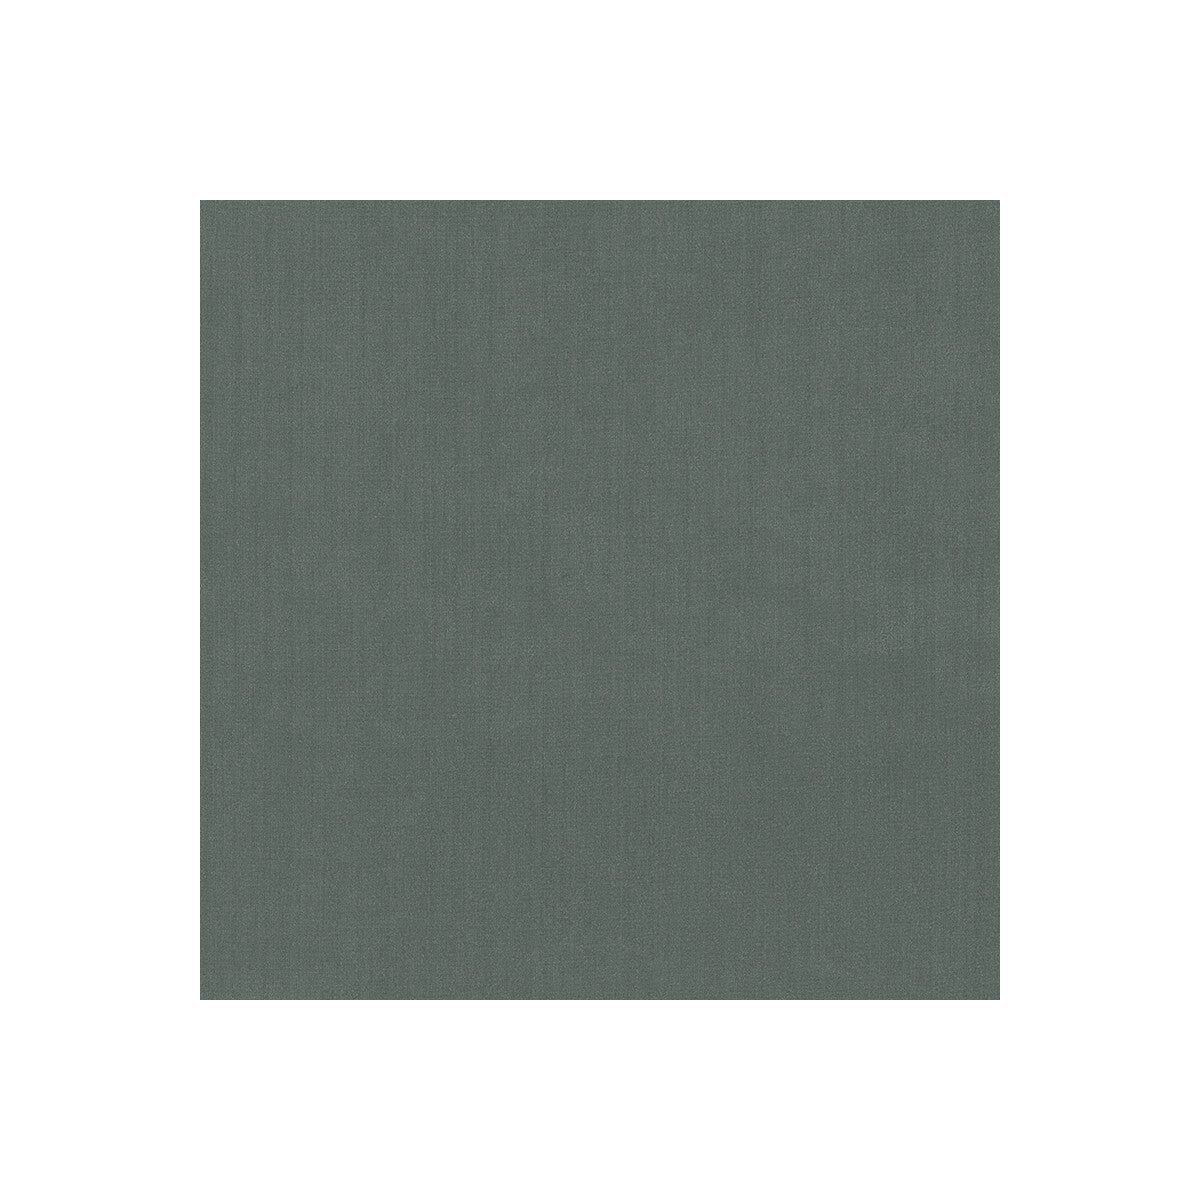 Kravet Basics fabric in 35916-21 color - pattern 35916.21.0 - by Kravet Basics